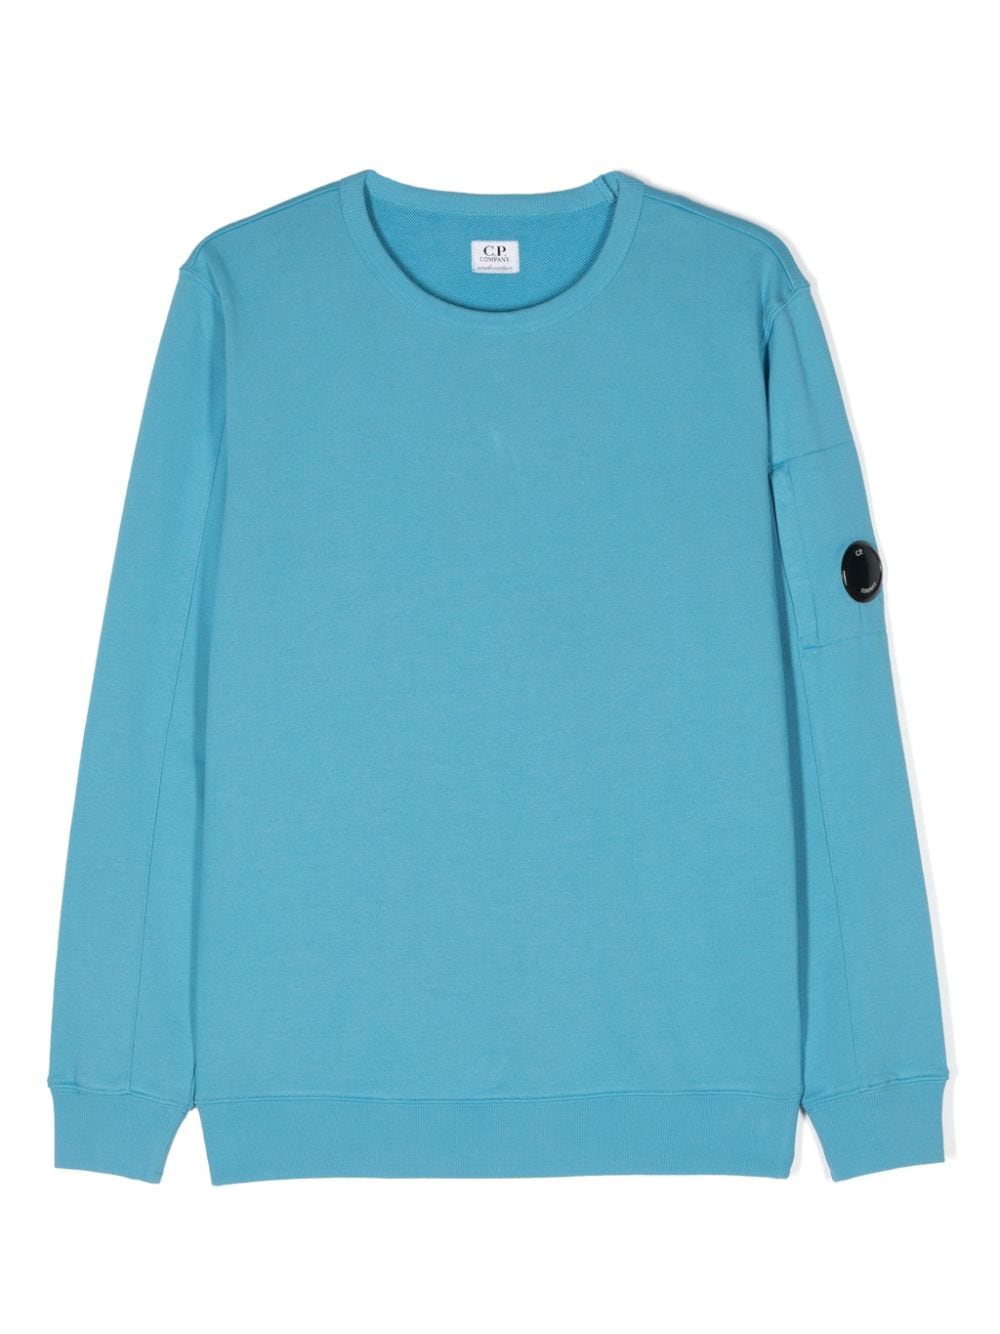 Aqua blue sweatshirt for boys with logo